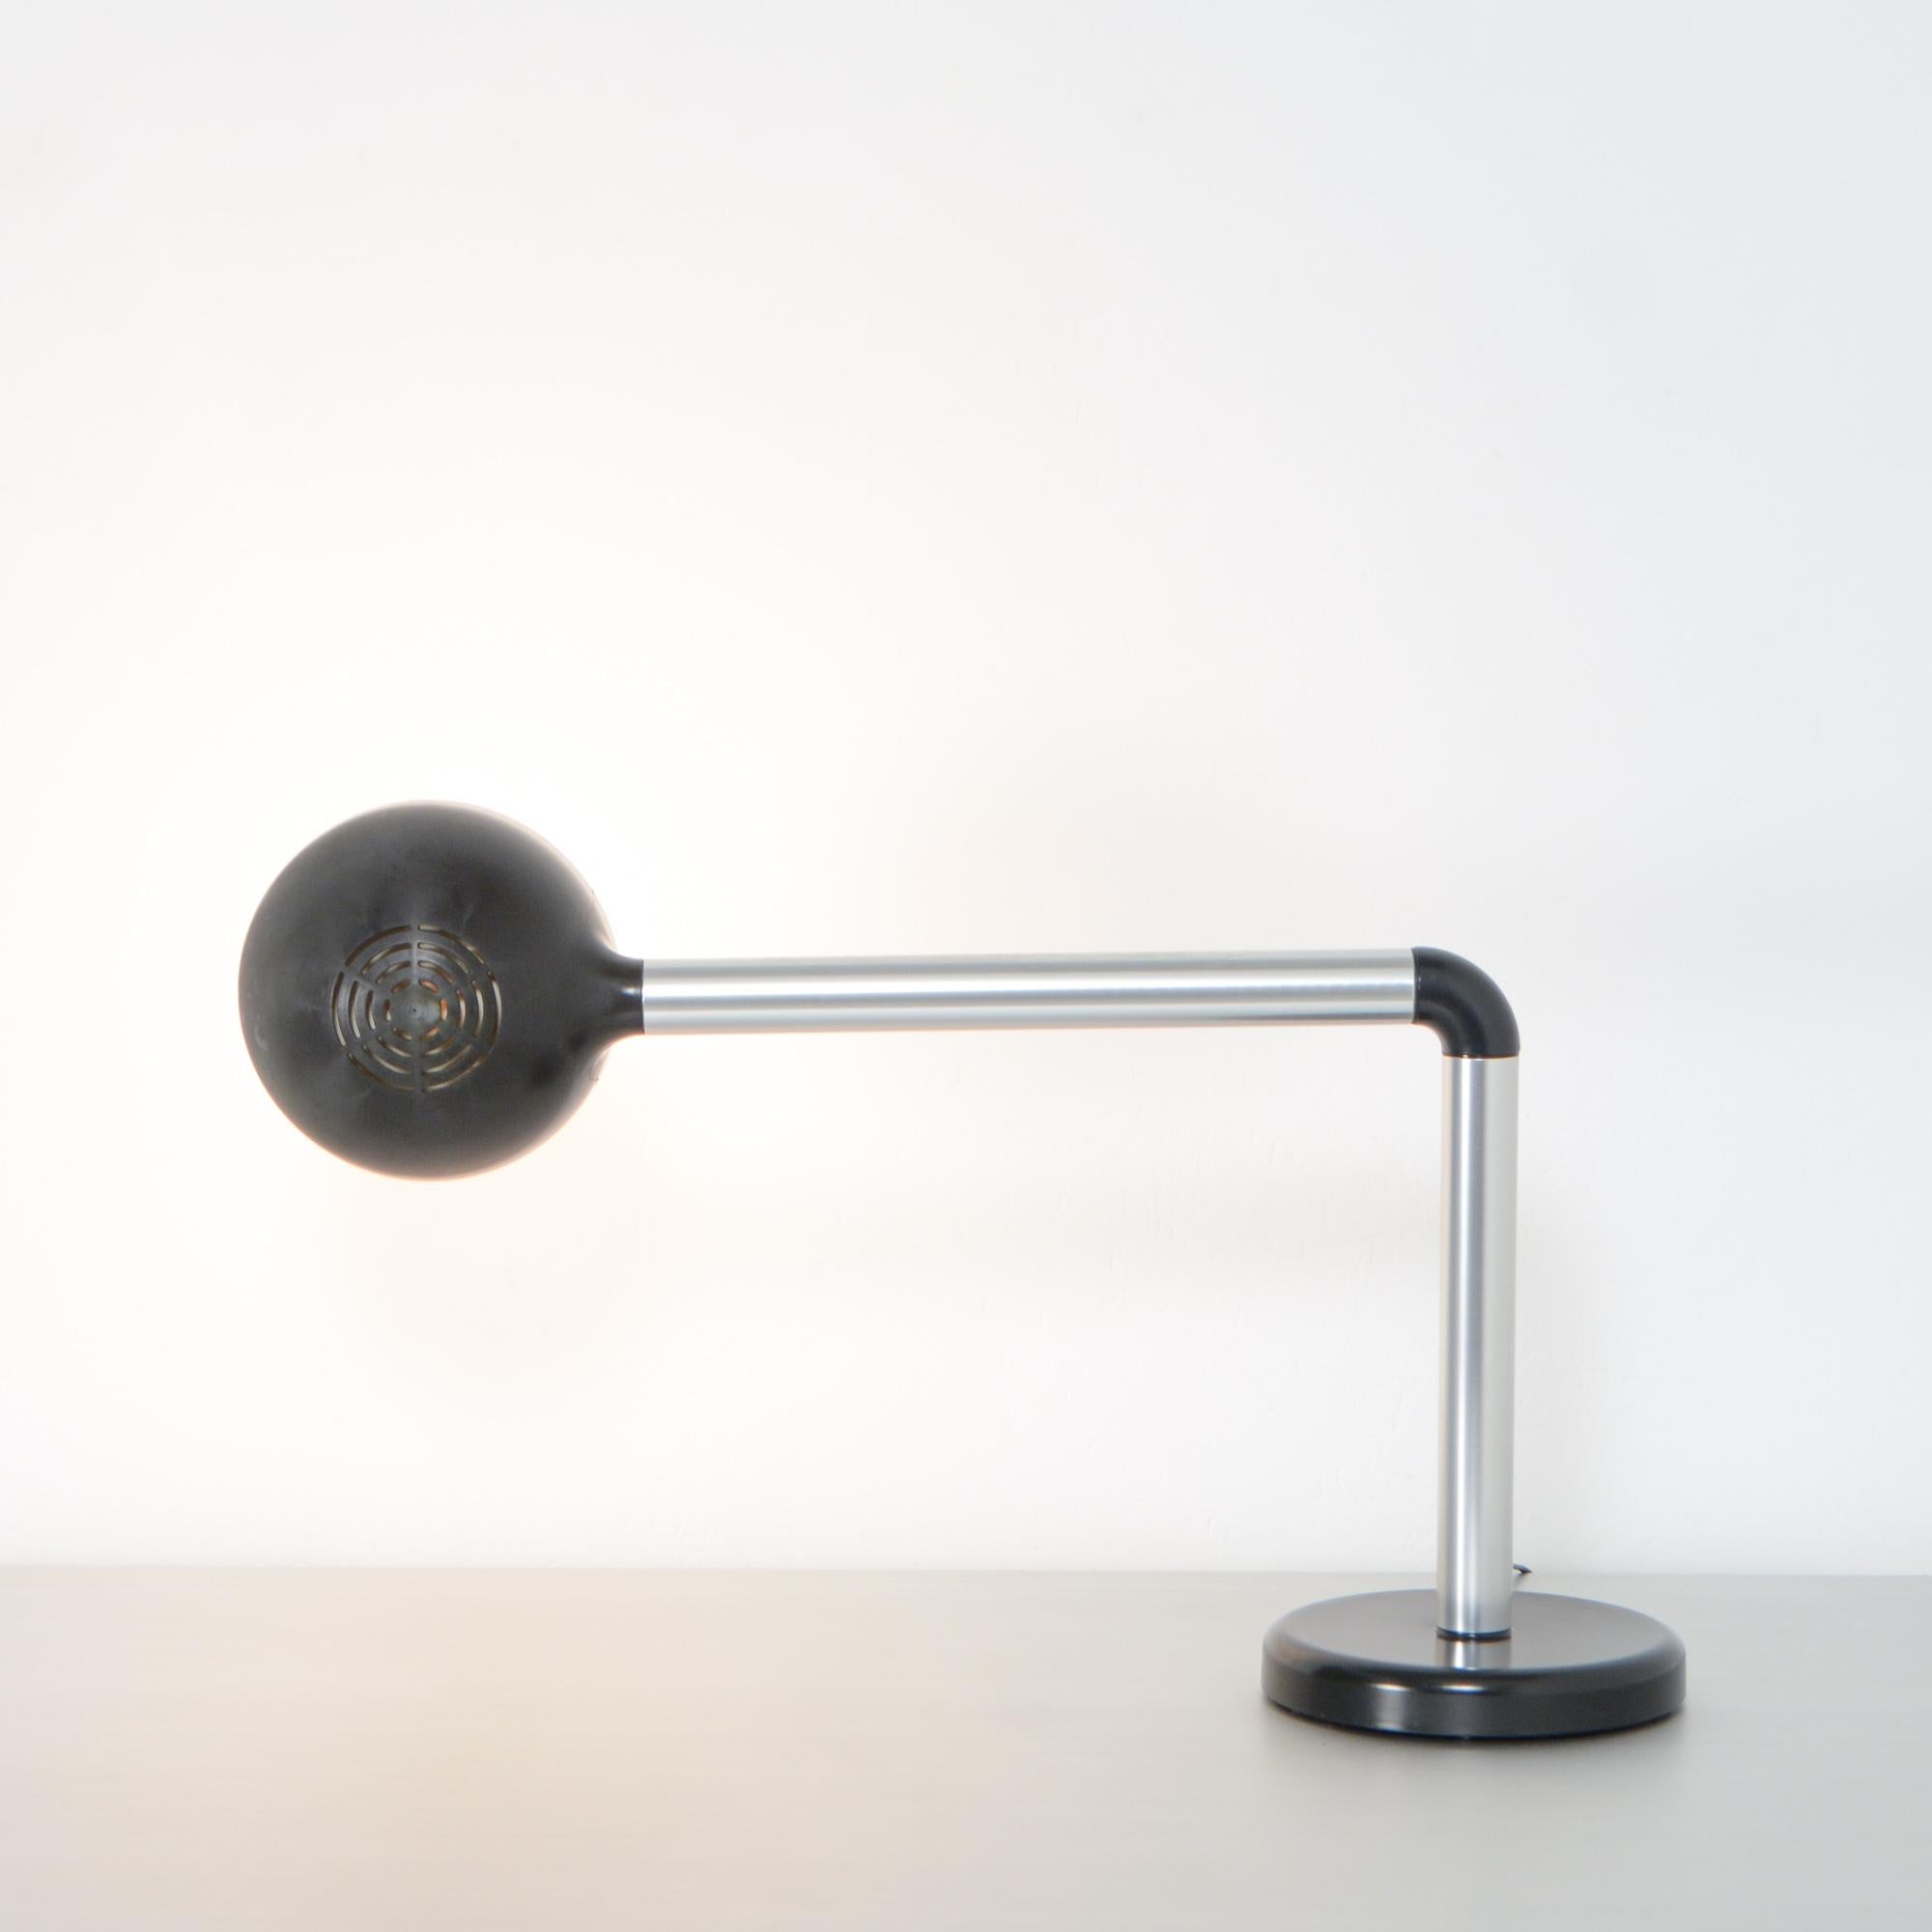 Desk Lamp by Robert Haussmann for Swiss Lamps International (Moderne)